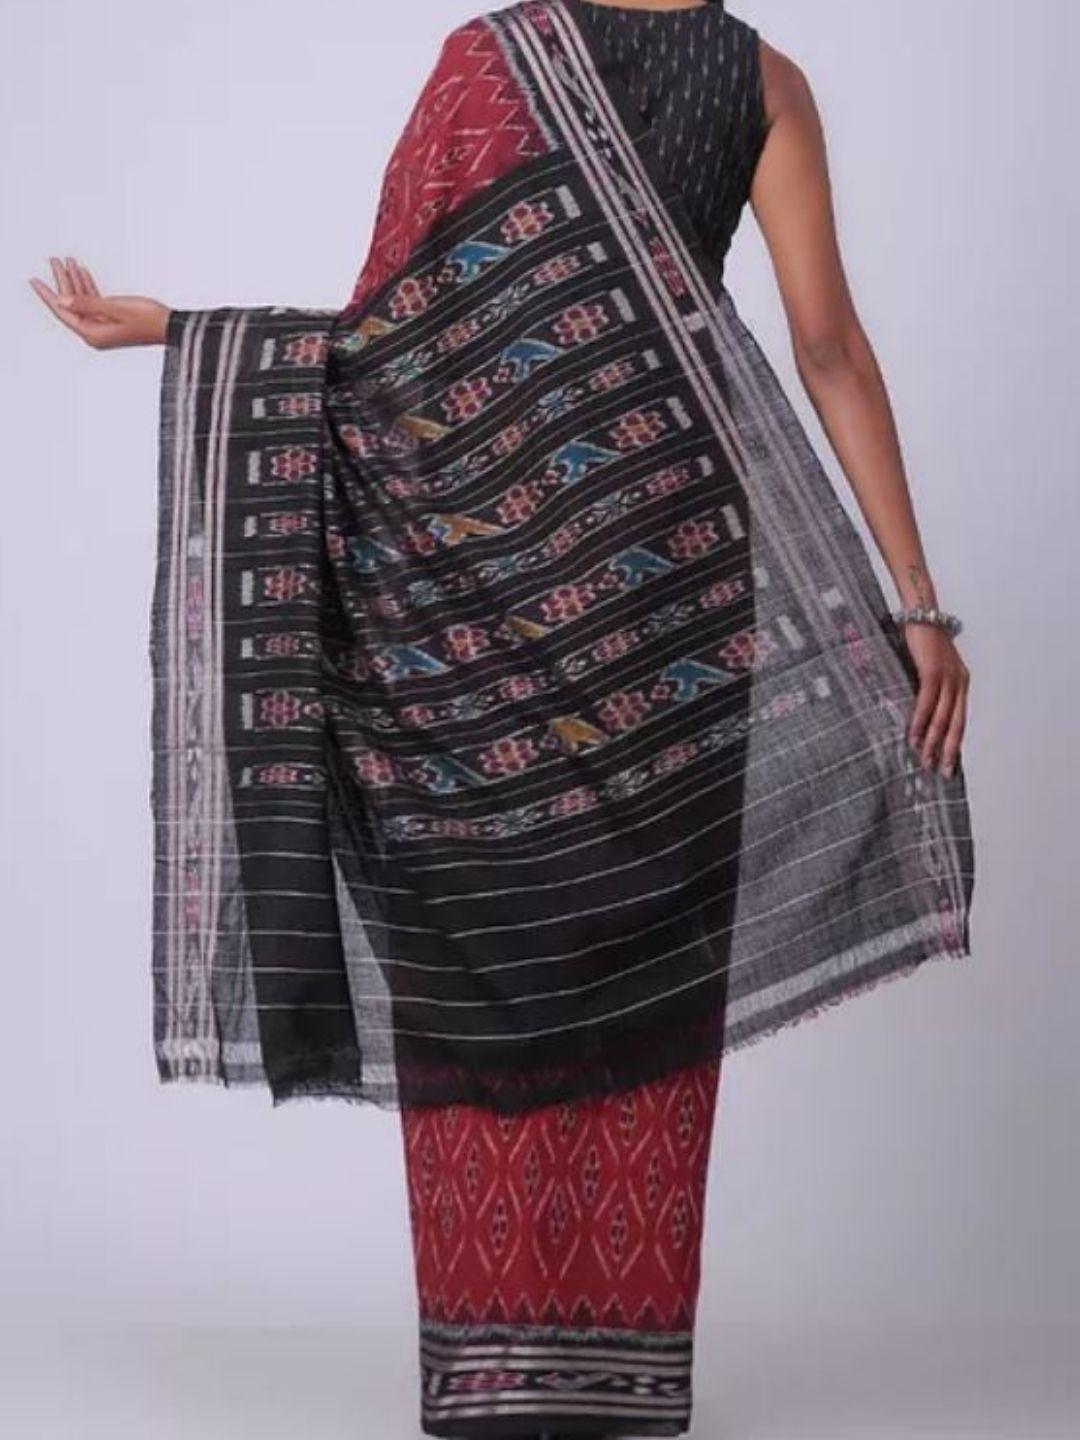 Red and Black Sambalpuri Ikat Cotton Saree - Crafts Collection